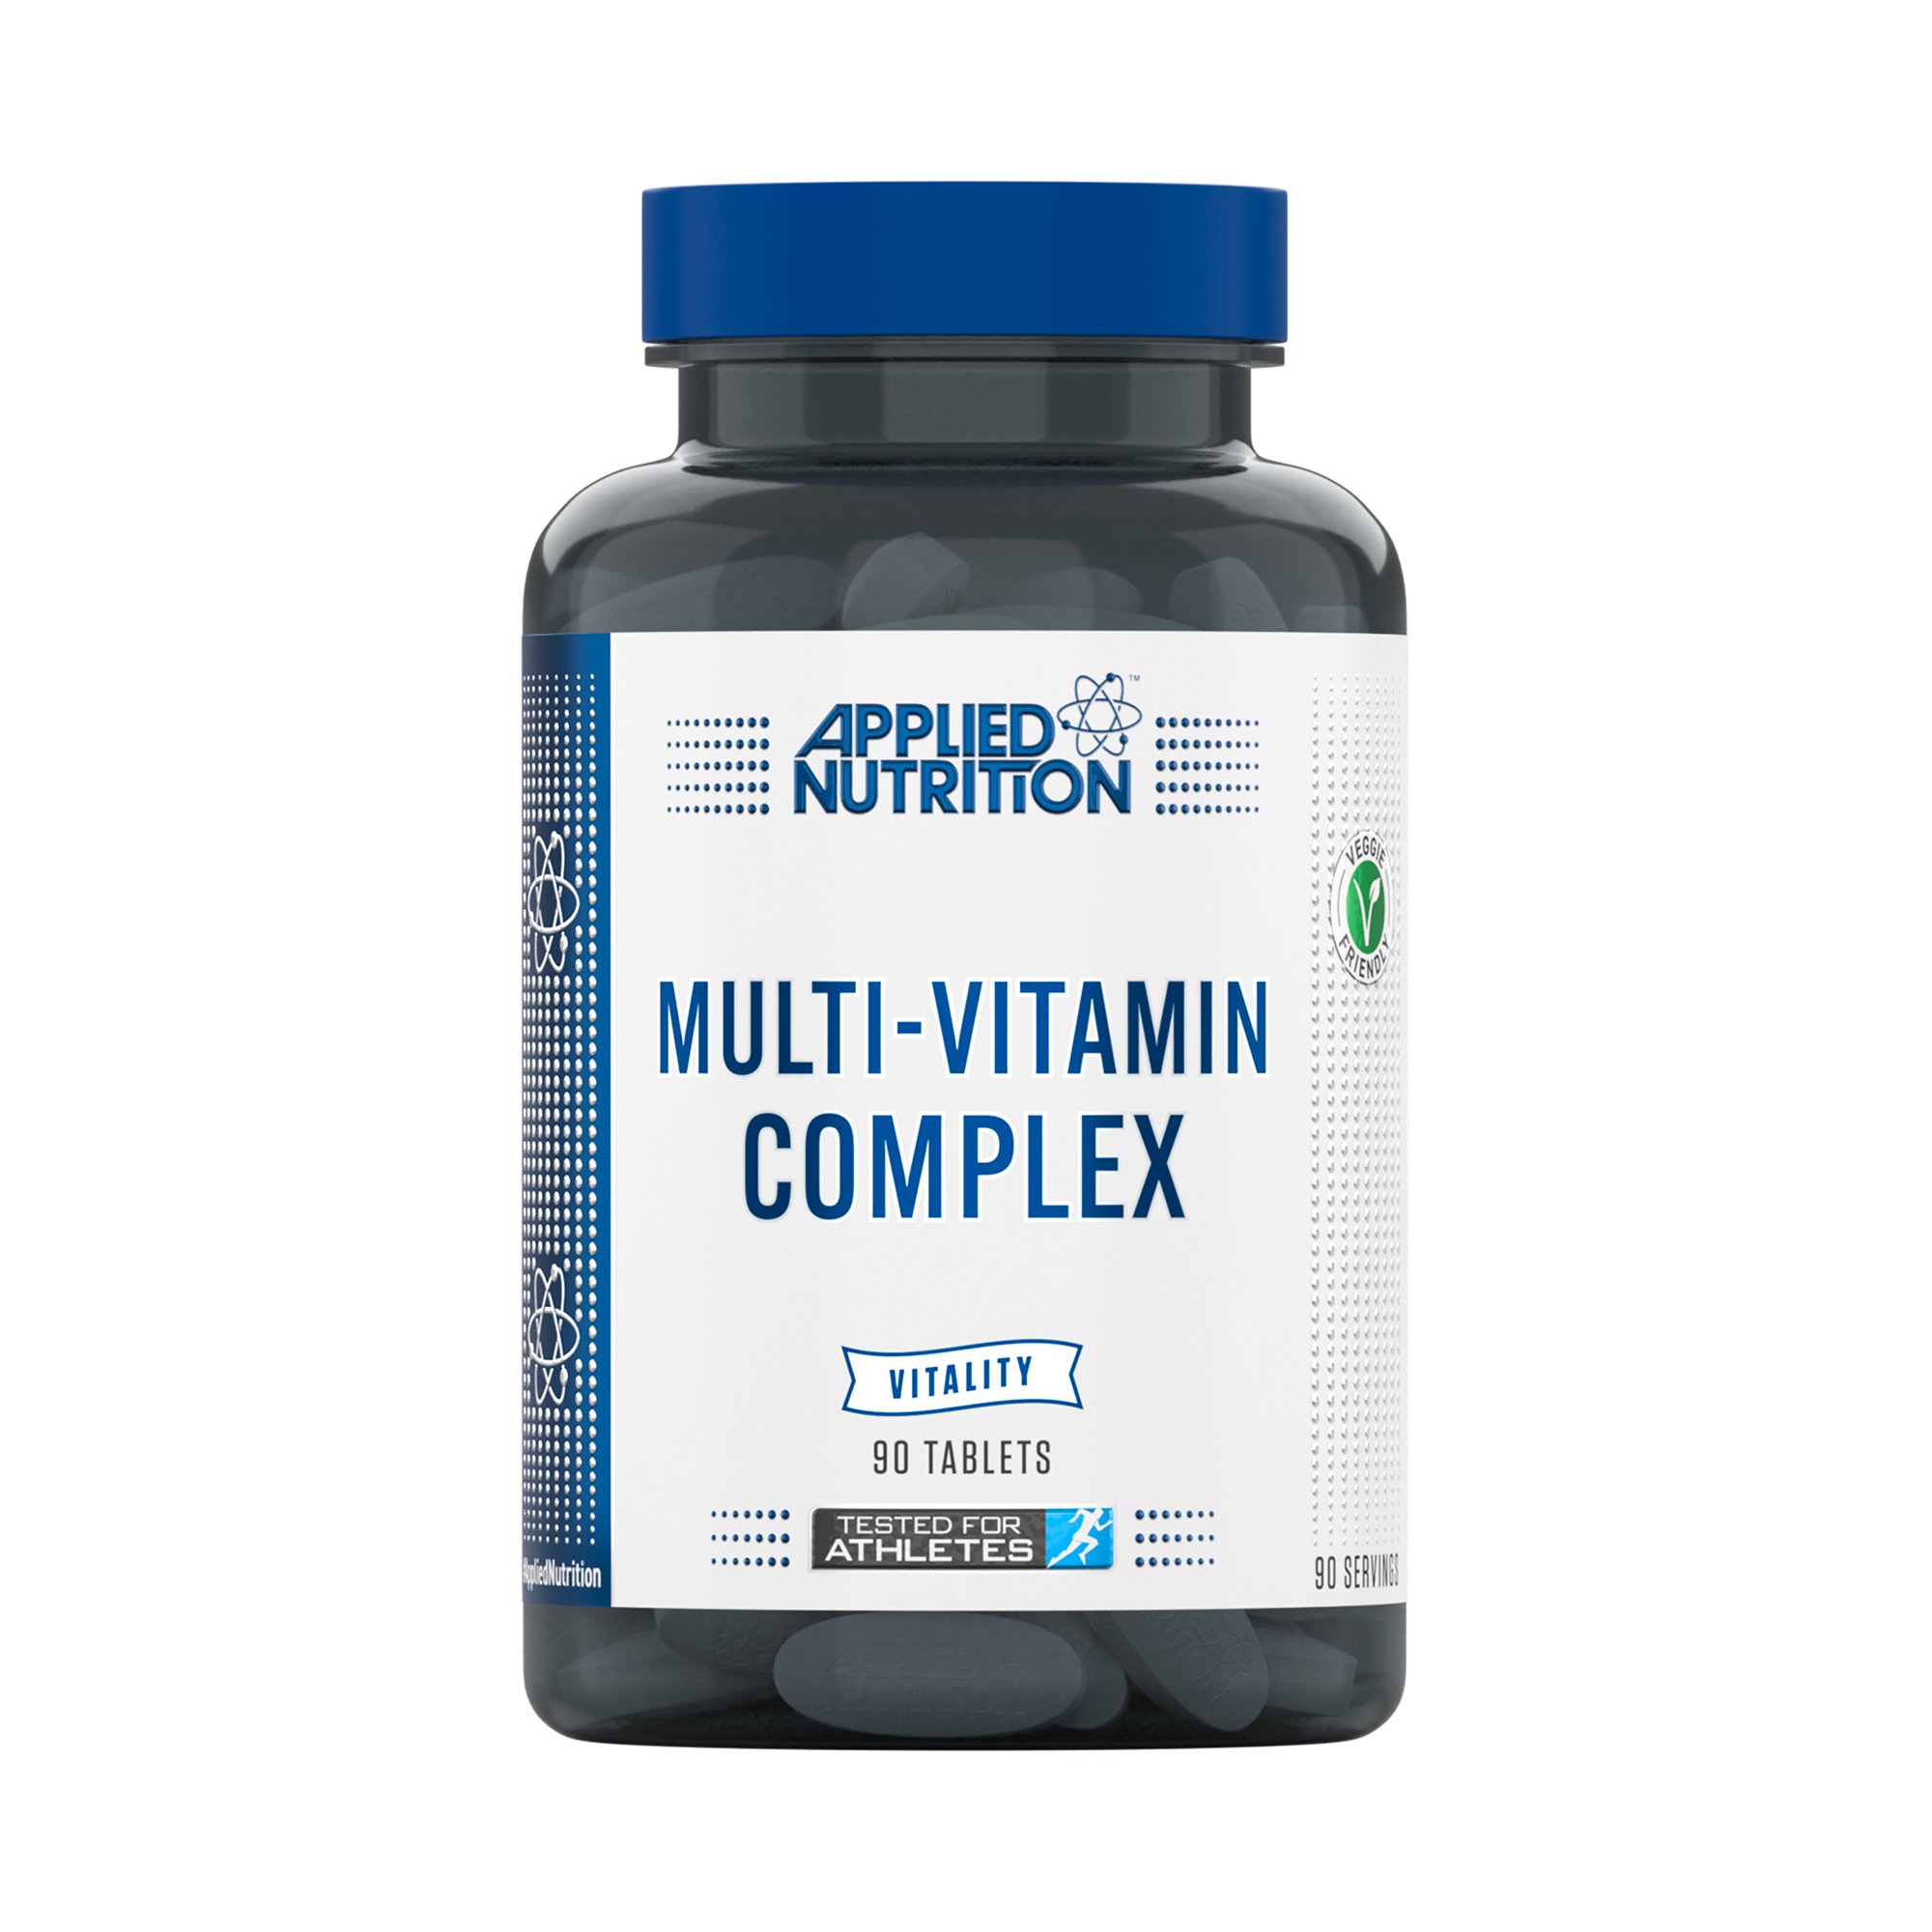 MULTI-VITAMIN COMPLEX - SC Supplements